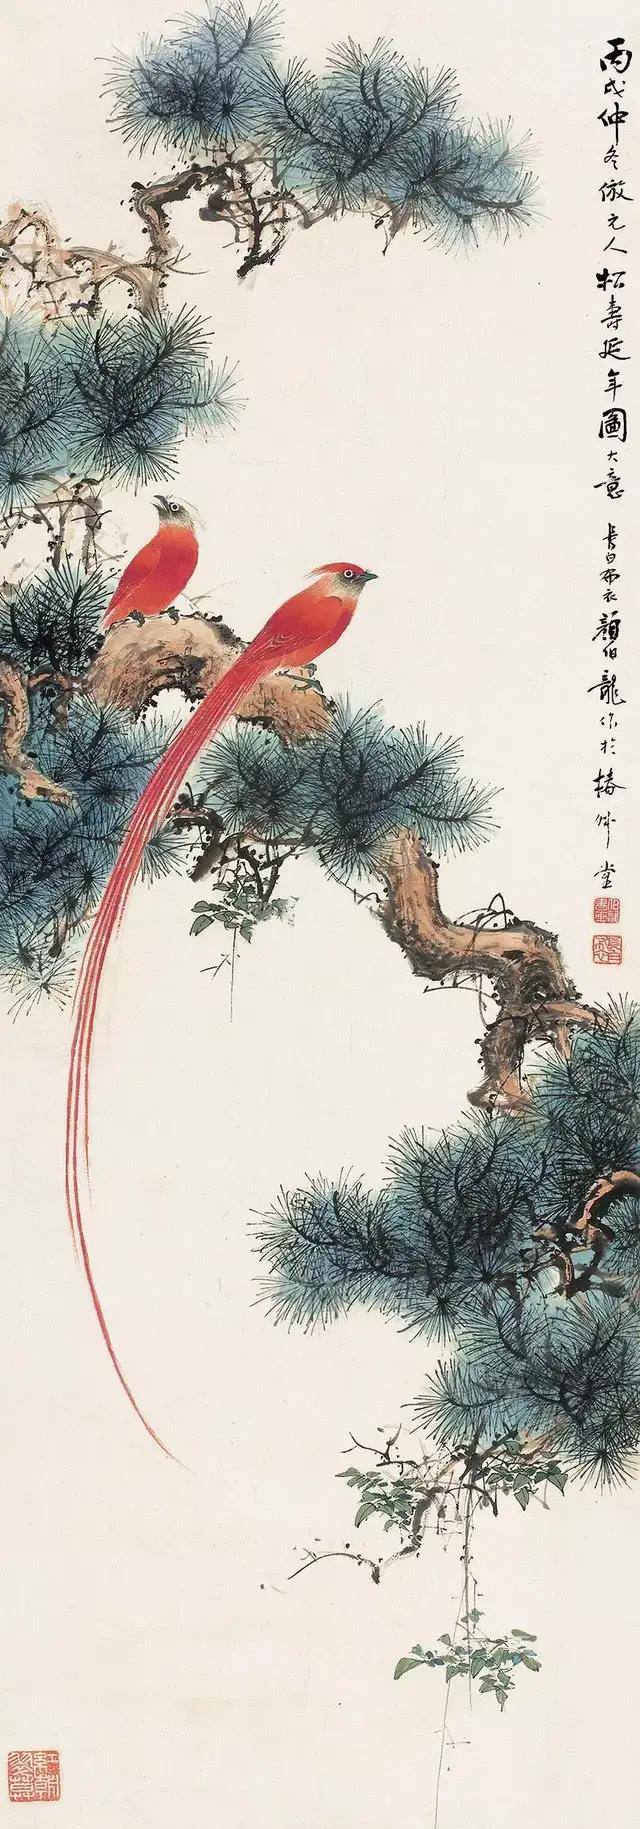 近代著名的花鸟画家颜伯龙